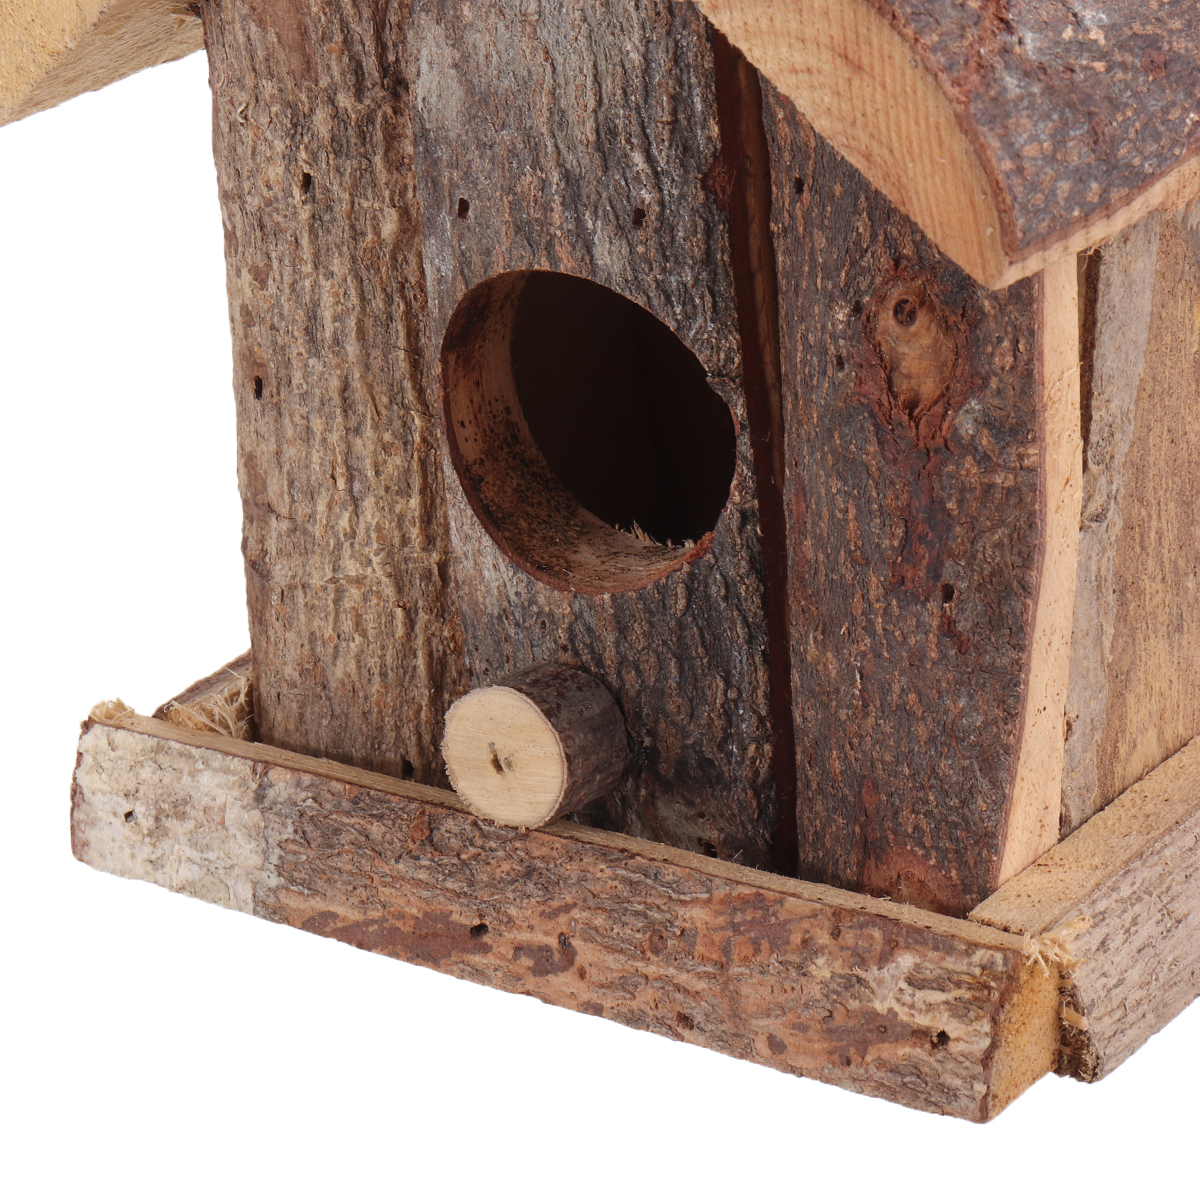 Vintage-Wooden-Bird-House-Nesting-Box-Small-Wild-Birds-Nest-Home-Garden-Decoration-1725292-8